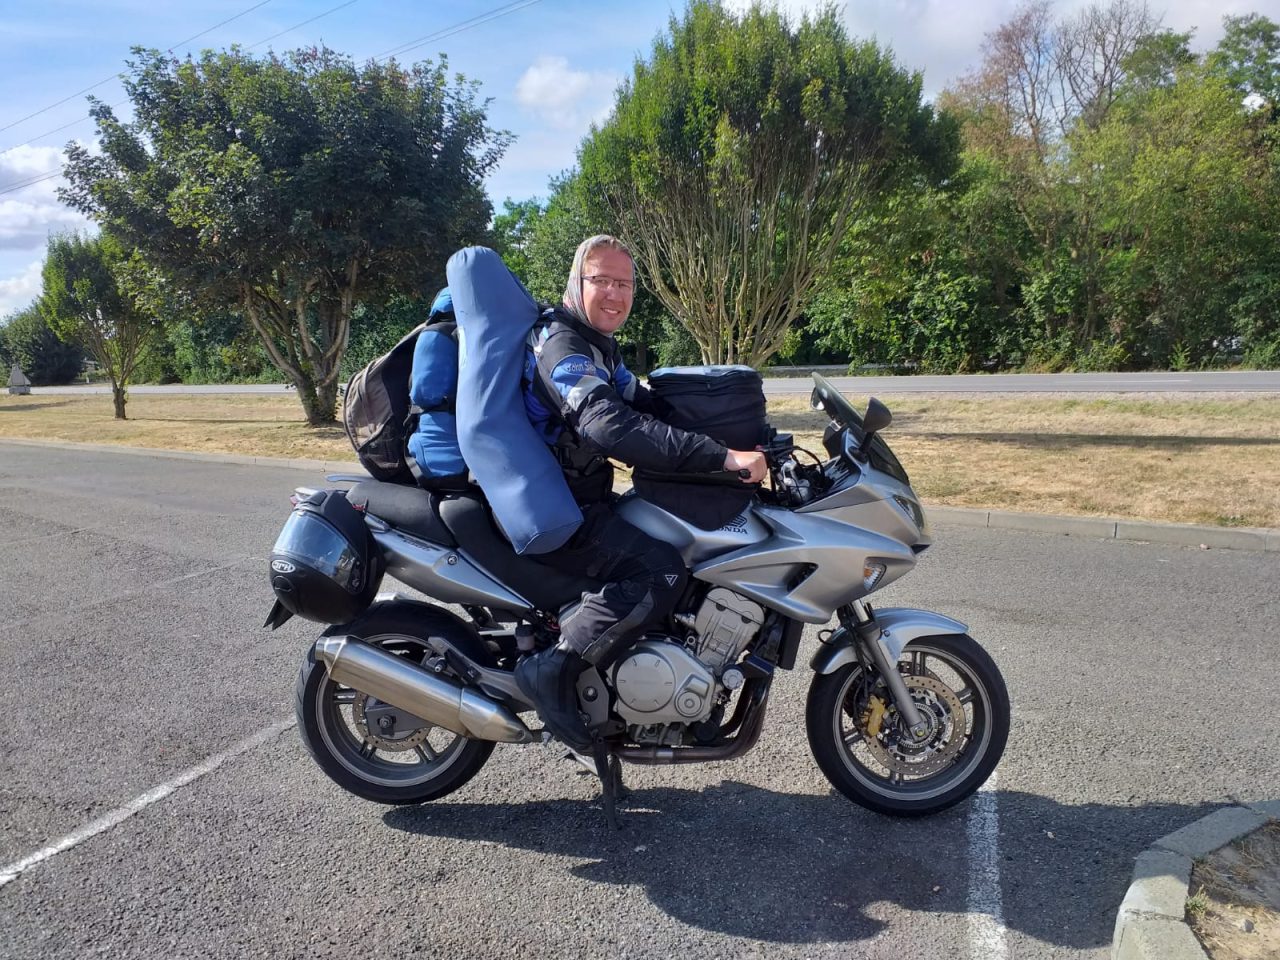 Thomas auf Reisen mit dem Motorrad.